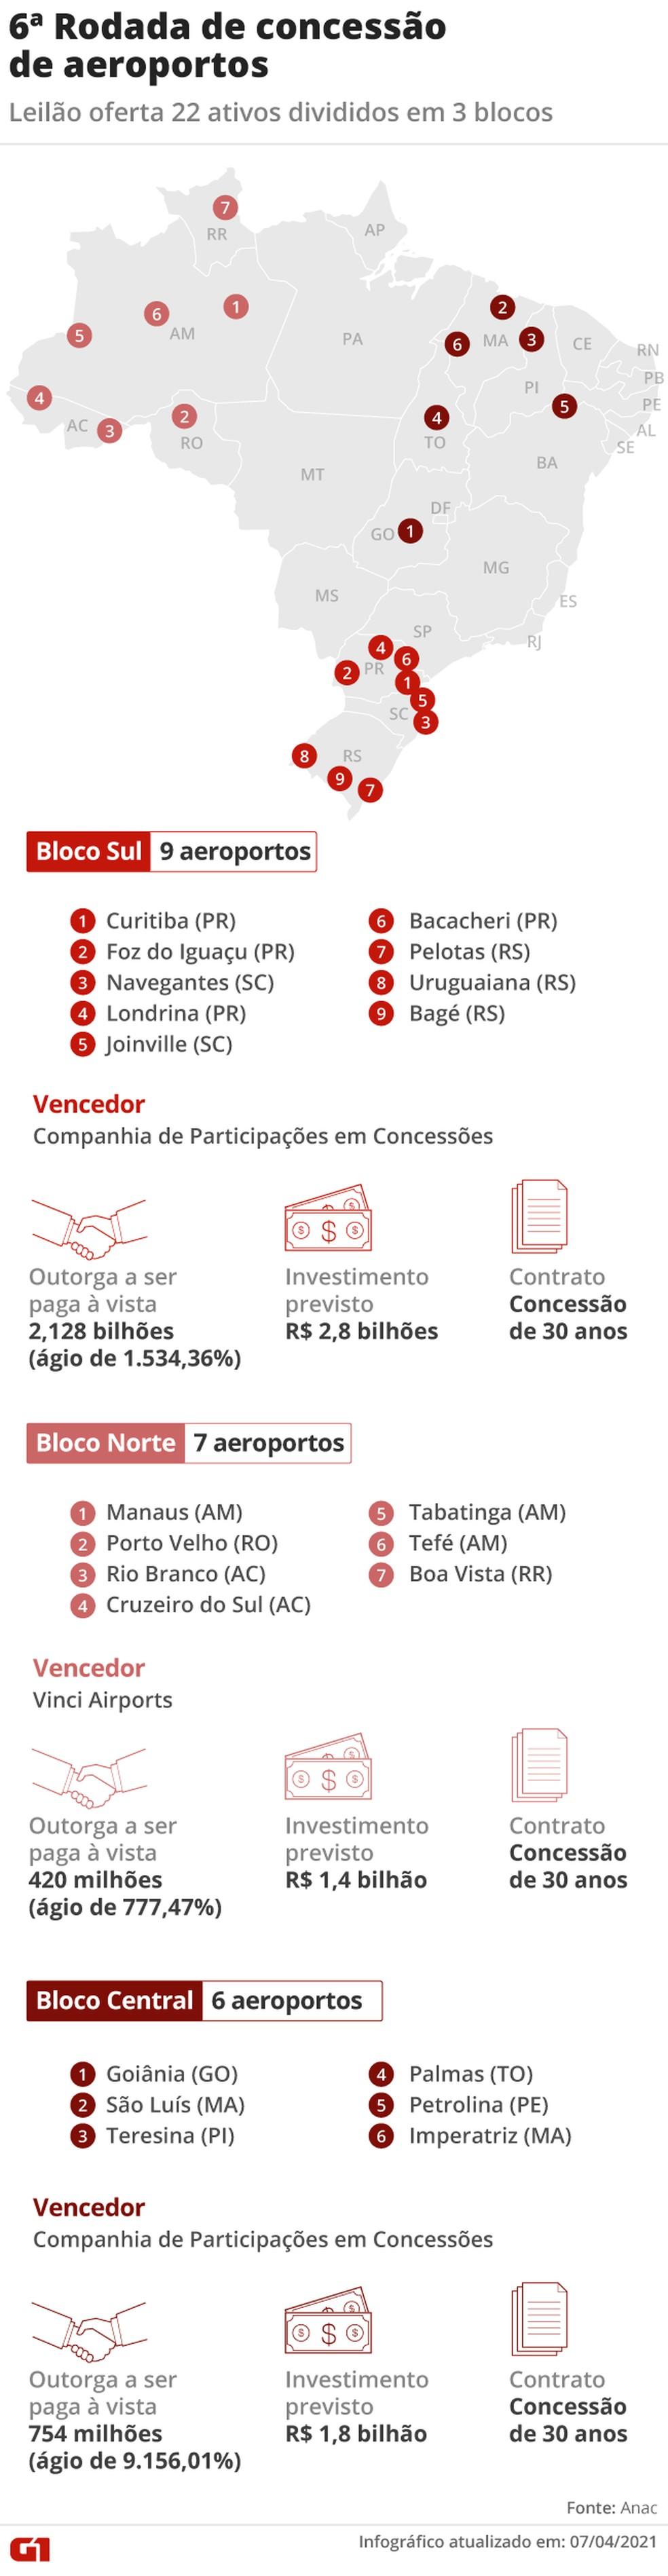 Governo arrecada R$ 3,3 bilhões com leilão de 22 aeroportos; veja os vencedores